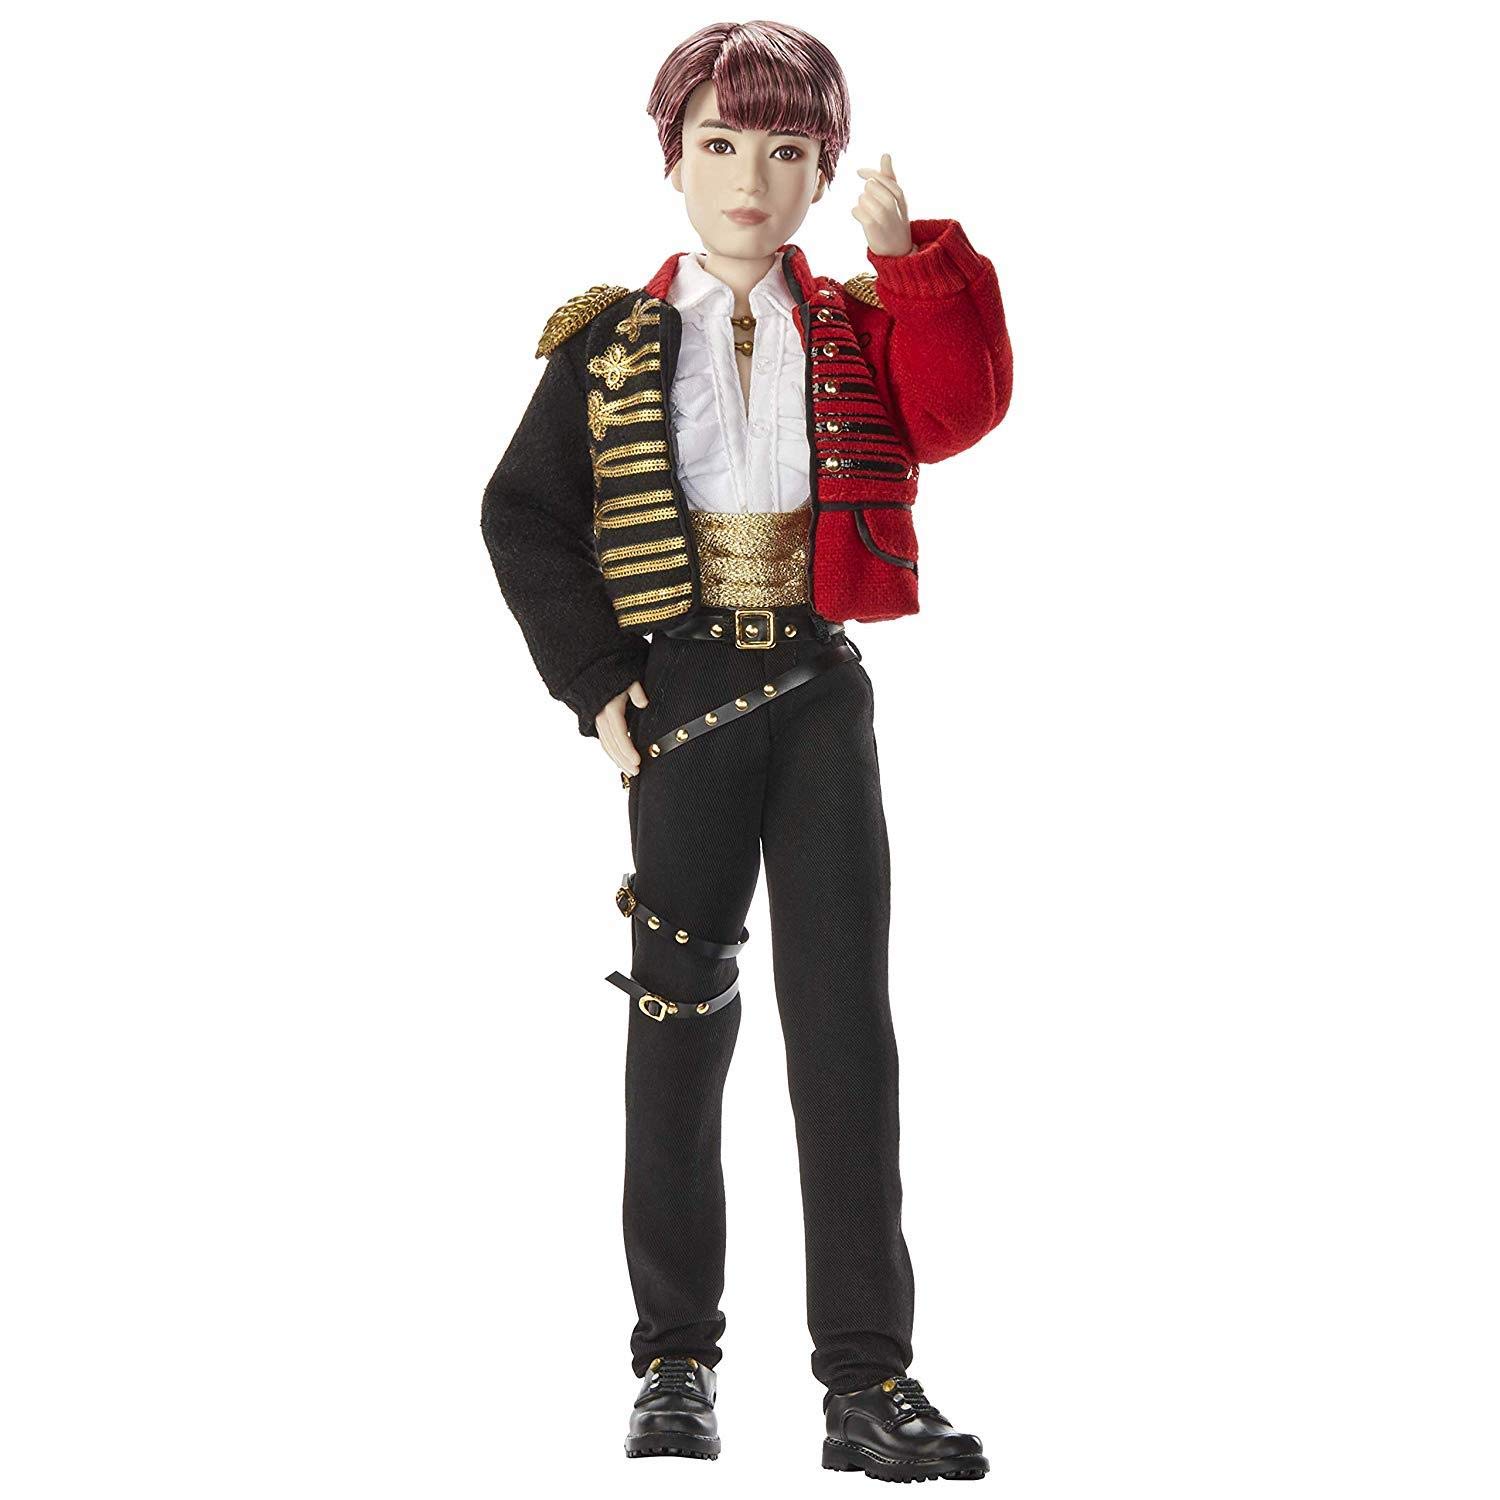 Haute Qualité BTS x Mattel poupée Prestige Jungkook, à l’effigie du membre du groupe de K-pop en tenue de scène, figurine à collectionner, GKC95 YMJuHWudZ véritable contre